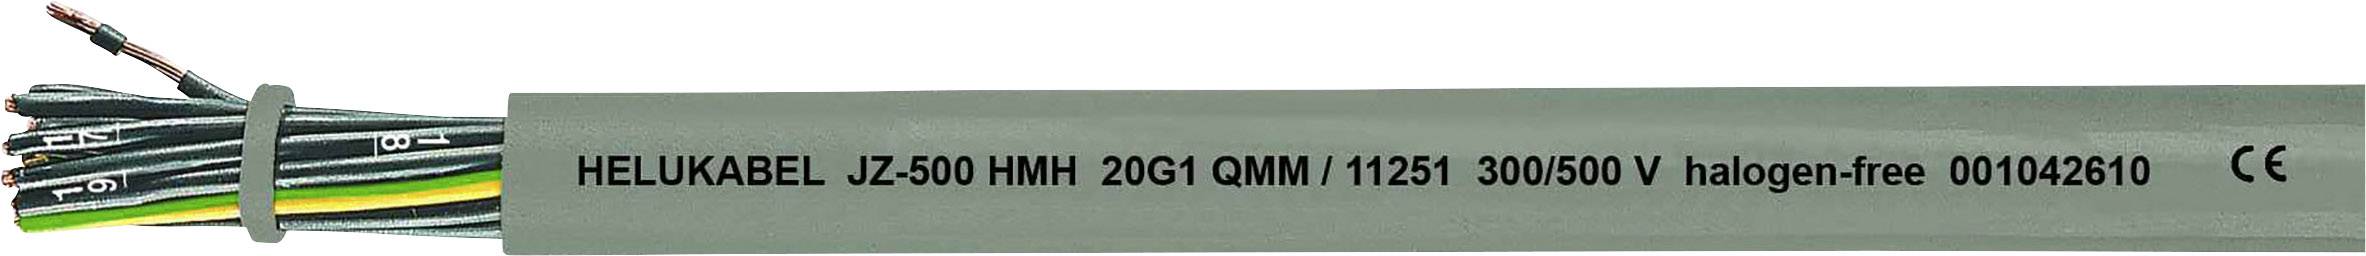 HELUKABEL JZ-500 HMH Steuerleitung 7 G 0.75 mm² Grau 11225-500 500 m